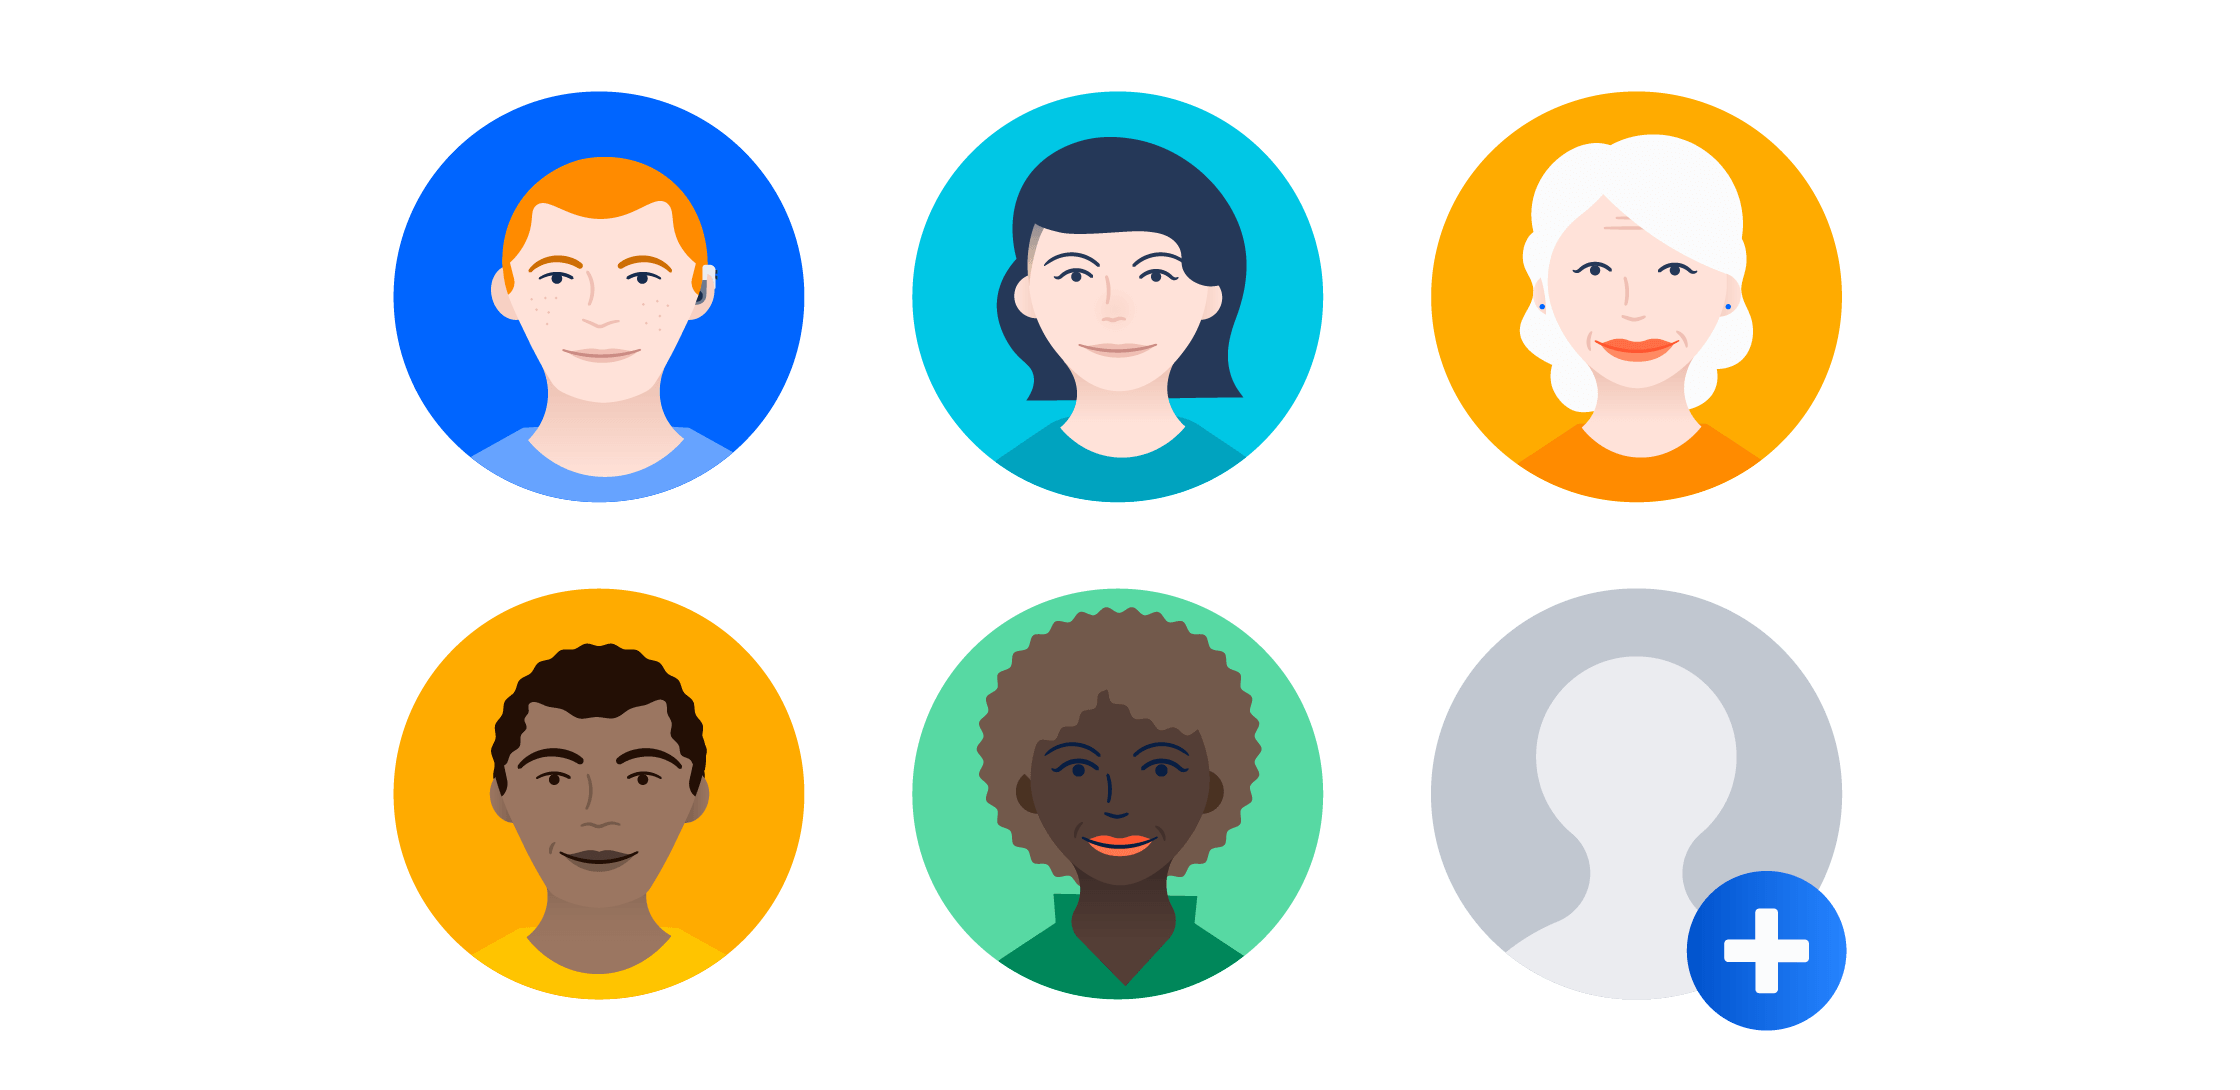 Group of meeple avatars